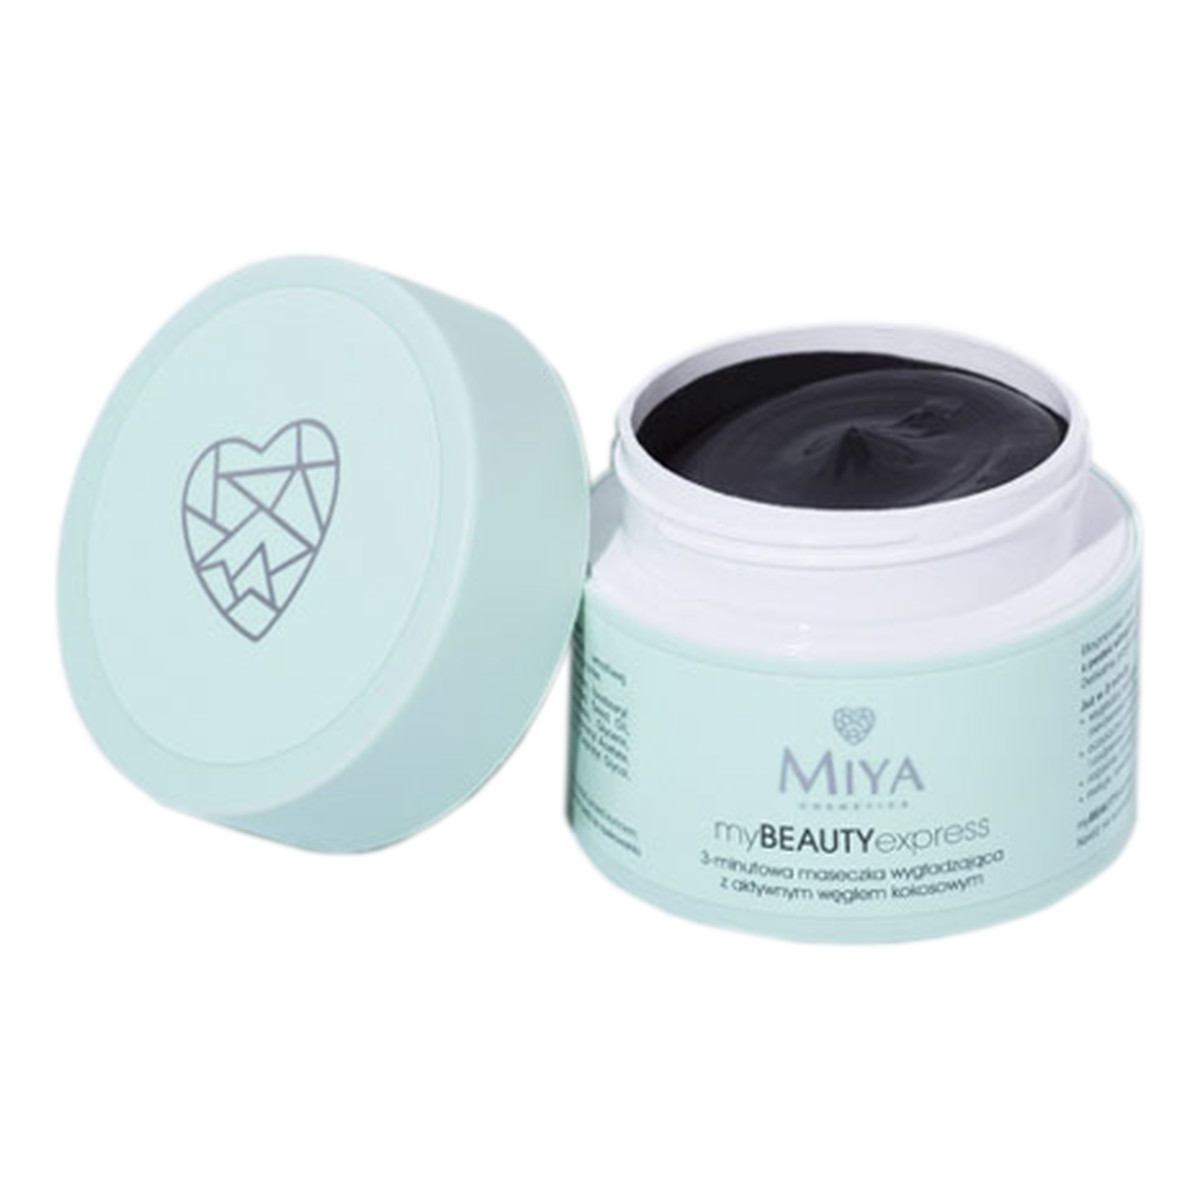 Miya Cosmetics Me Beauty Express 3-minutowa maseczka wygładzająca z aktywnym węglem kokosowym 50g